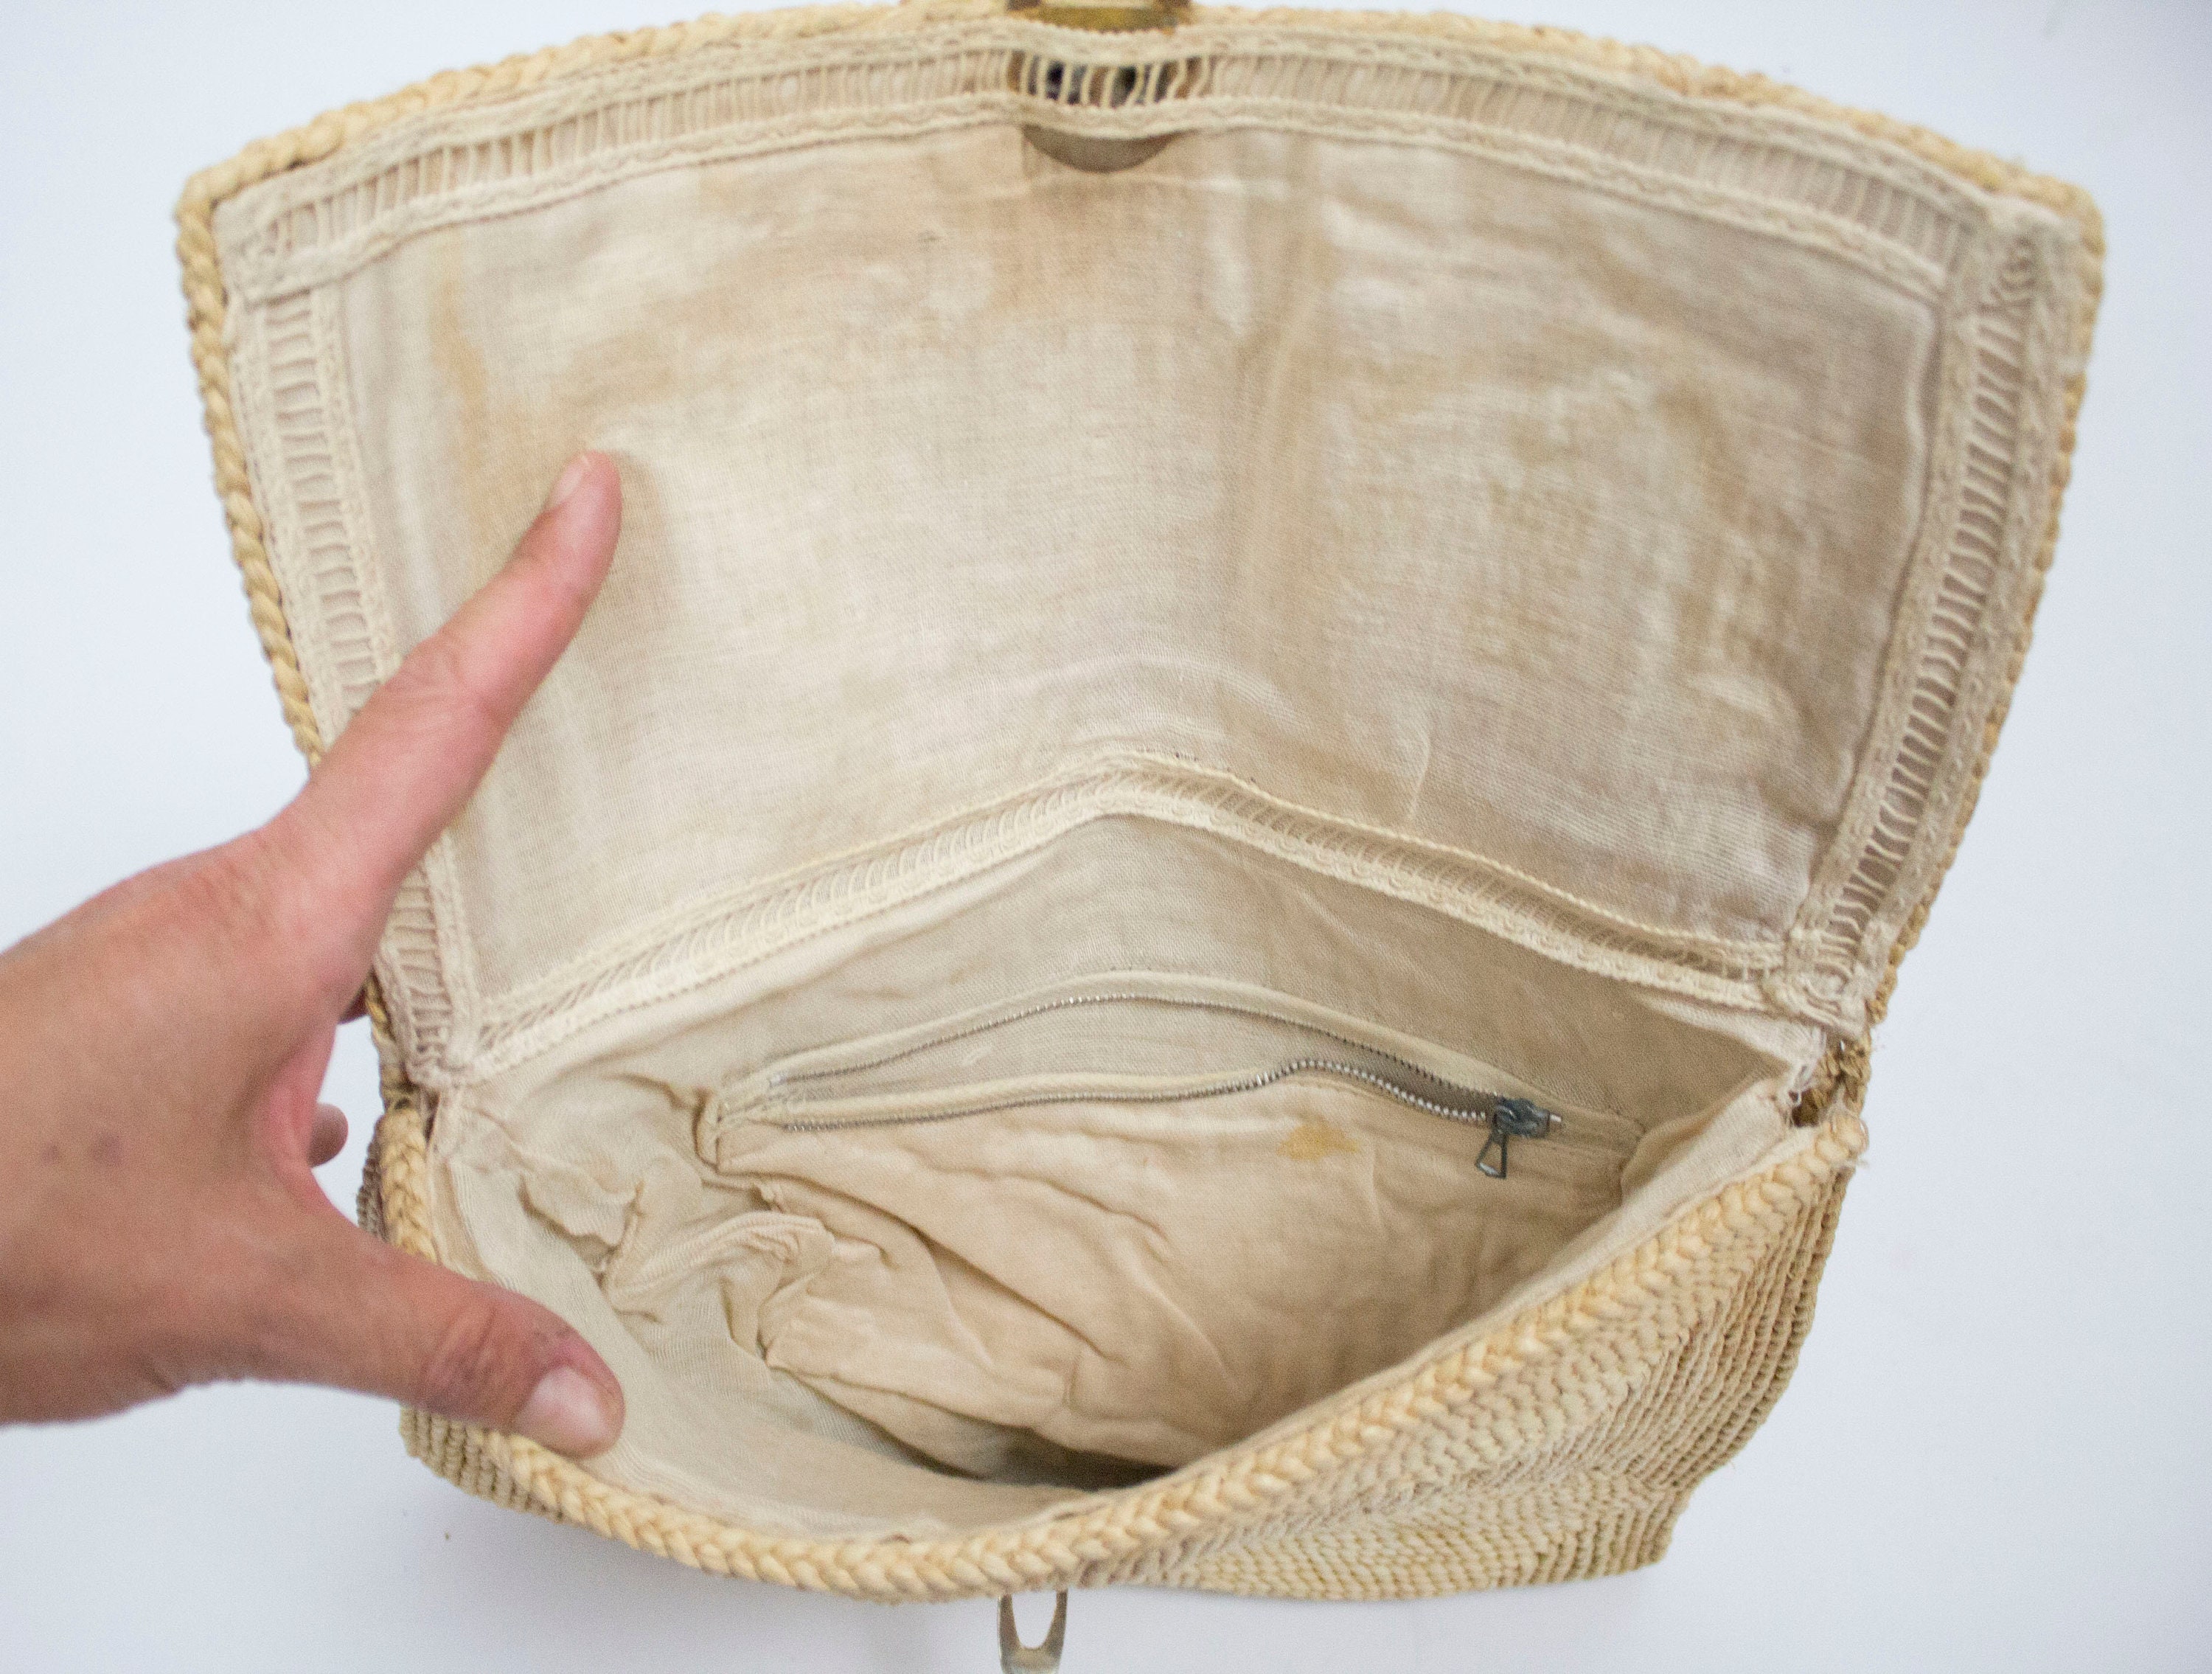 Prada Raffia Tote Bag White And Beige For Women 9.1in/23cm